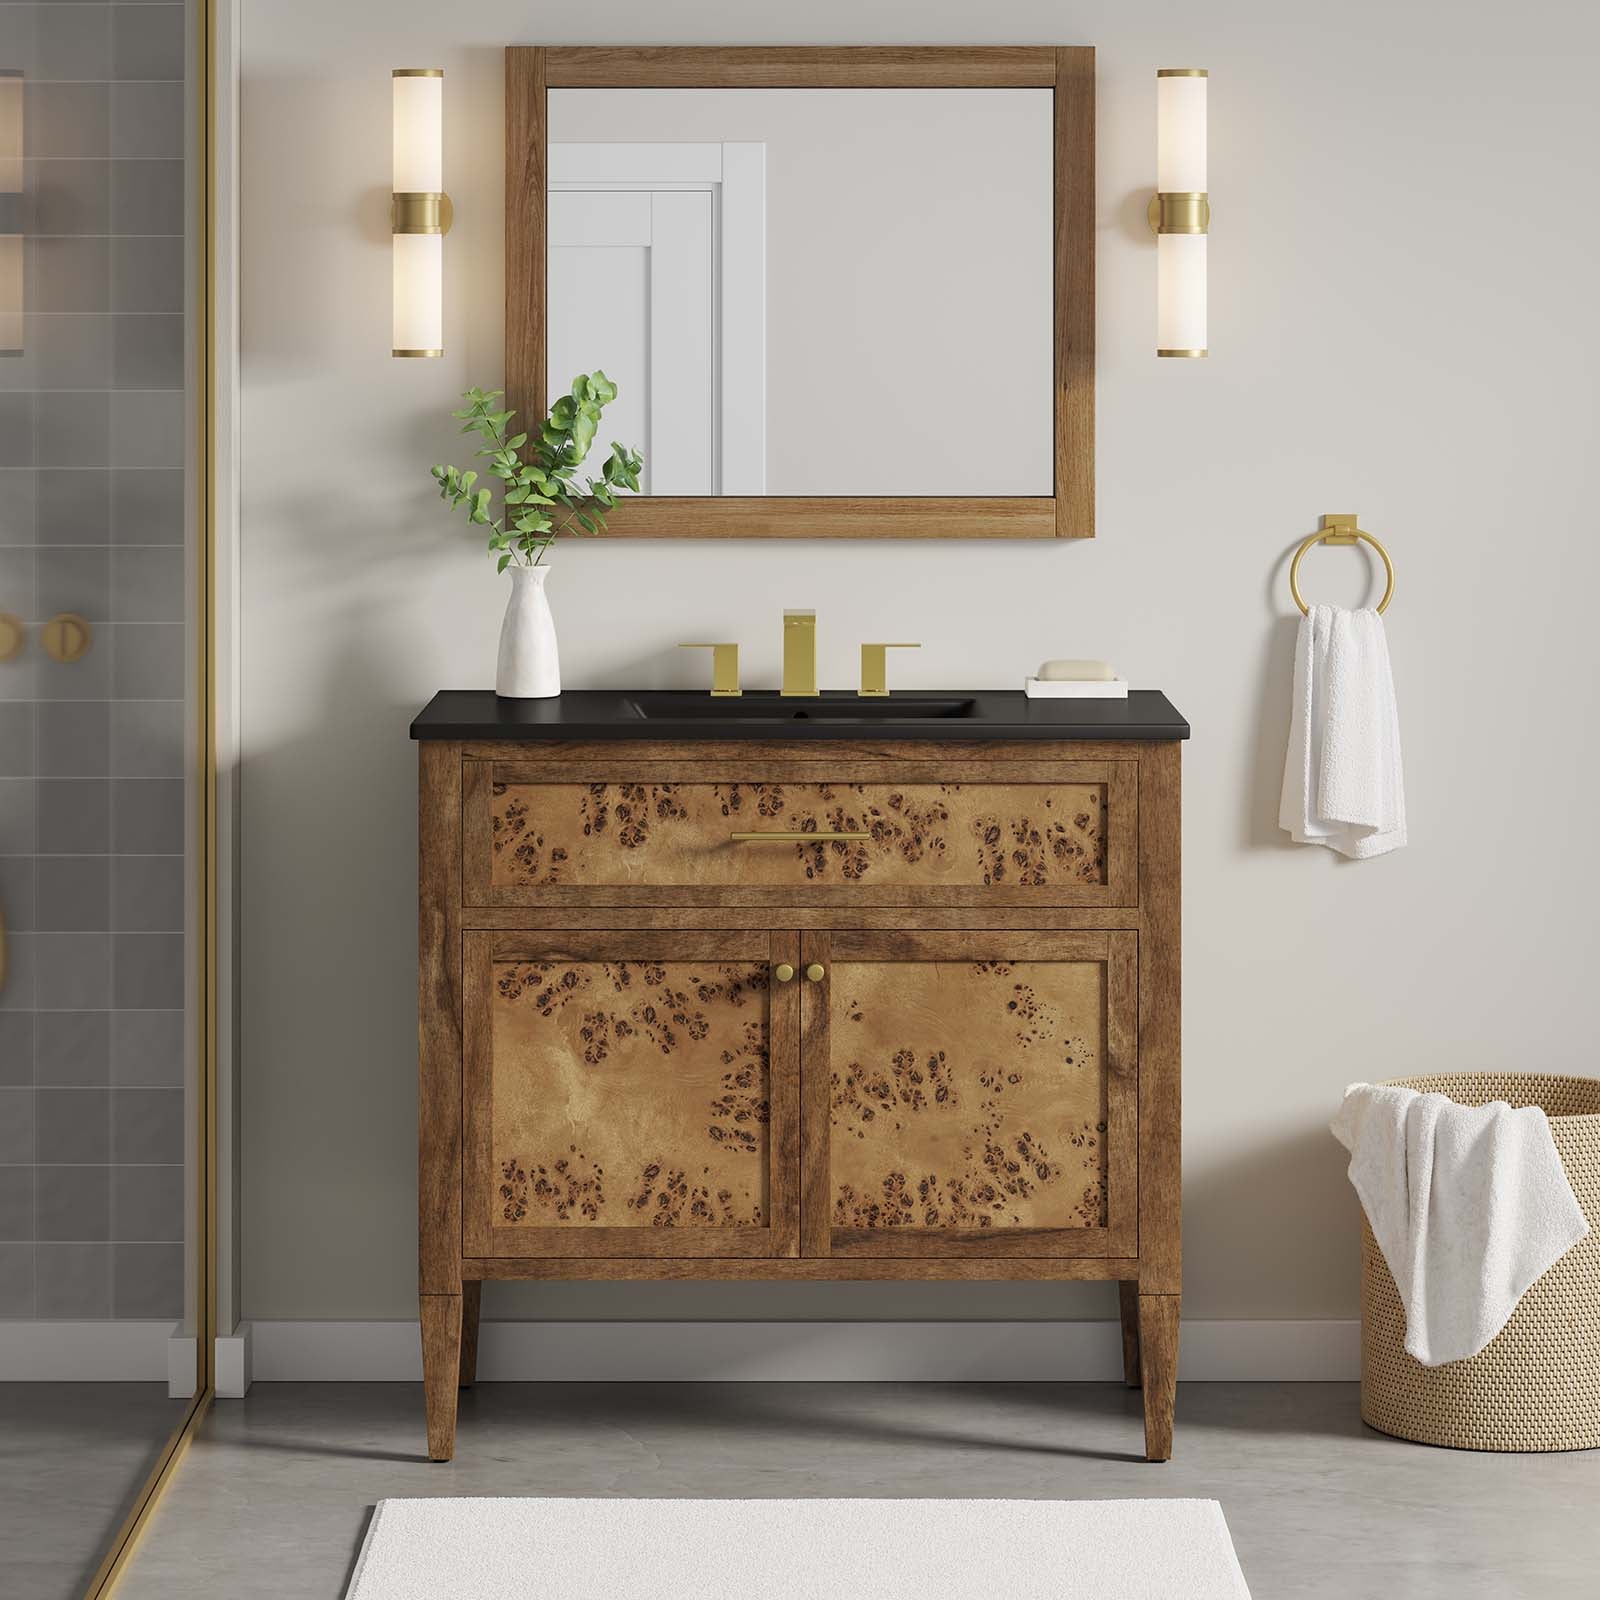 One - Elysian 36" Wood Bathroom Vanity